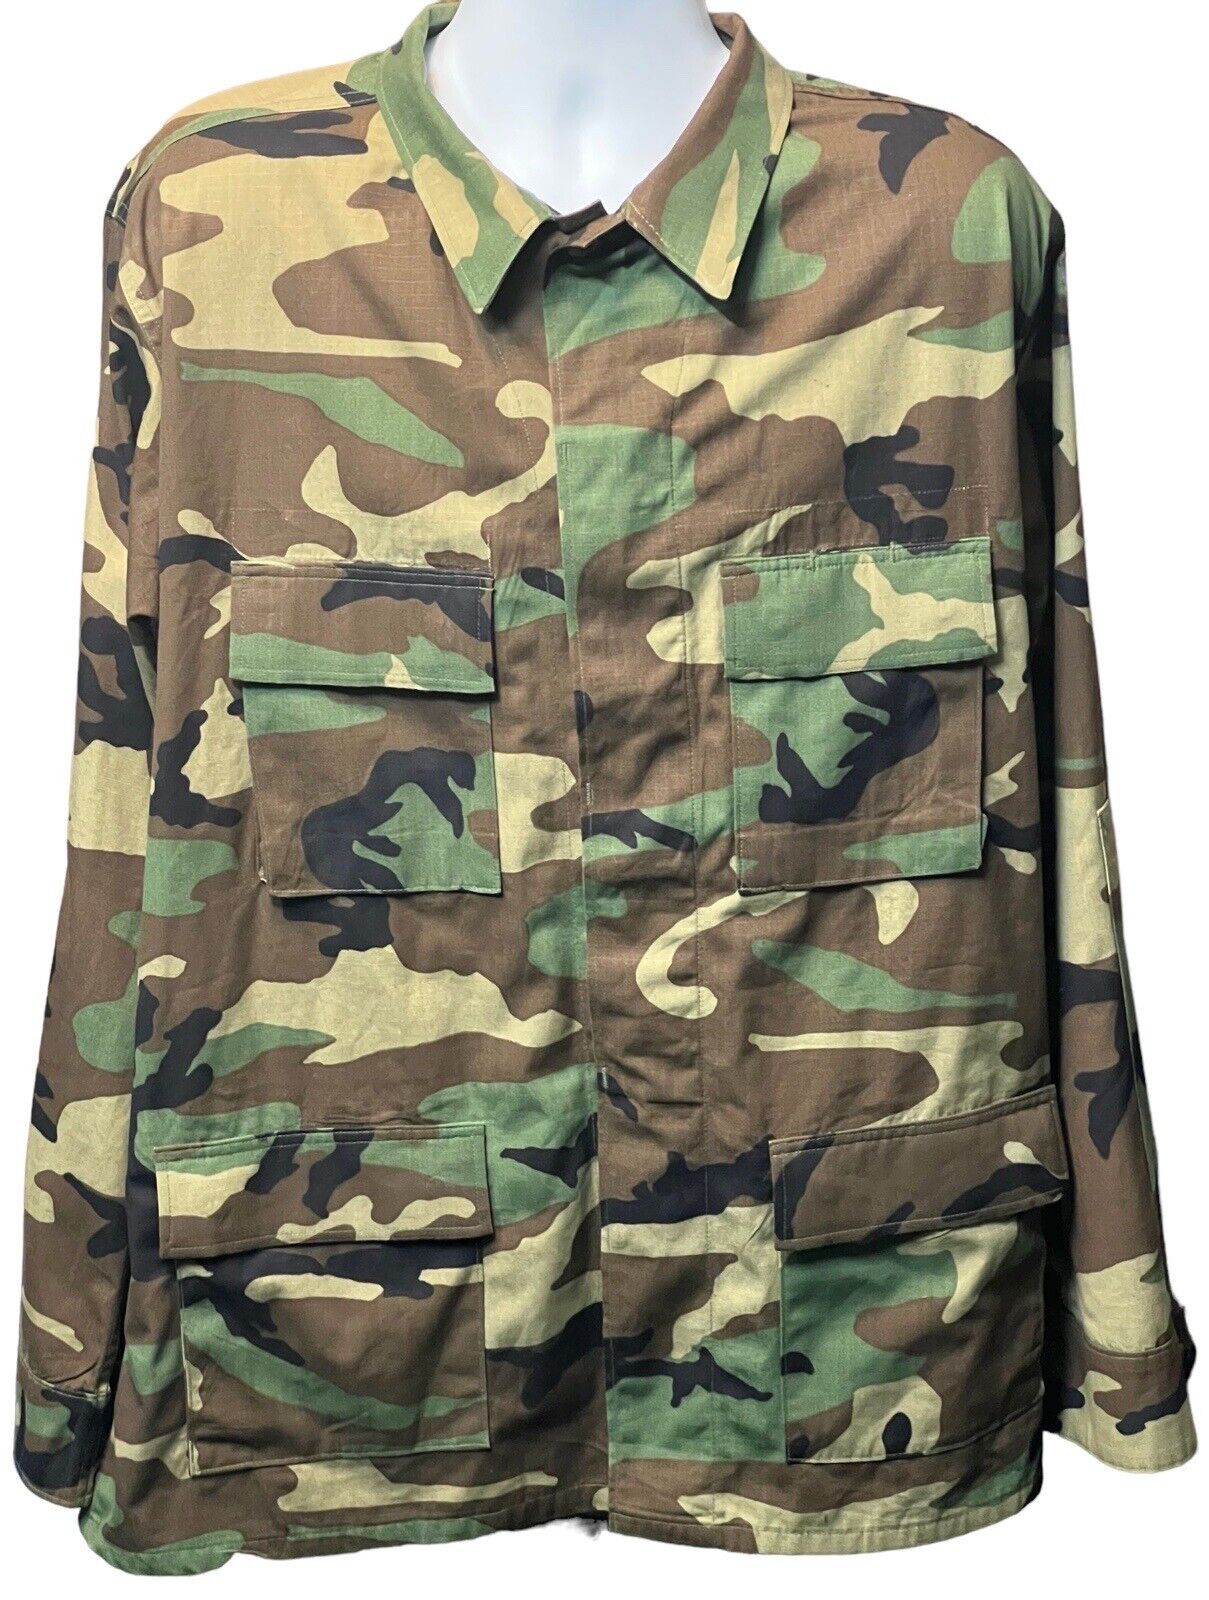 Military Woodland Camo Shirt Jacket Camouflage Combat Field Coat Large Regular